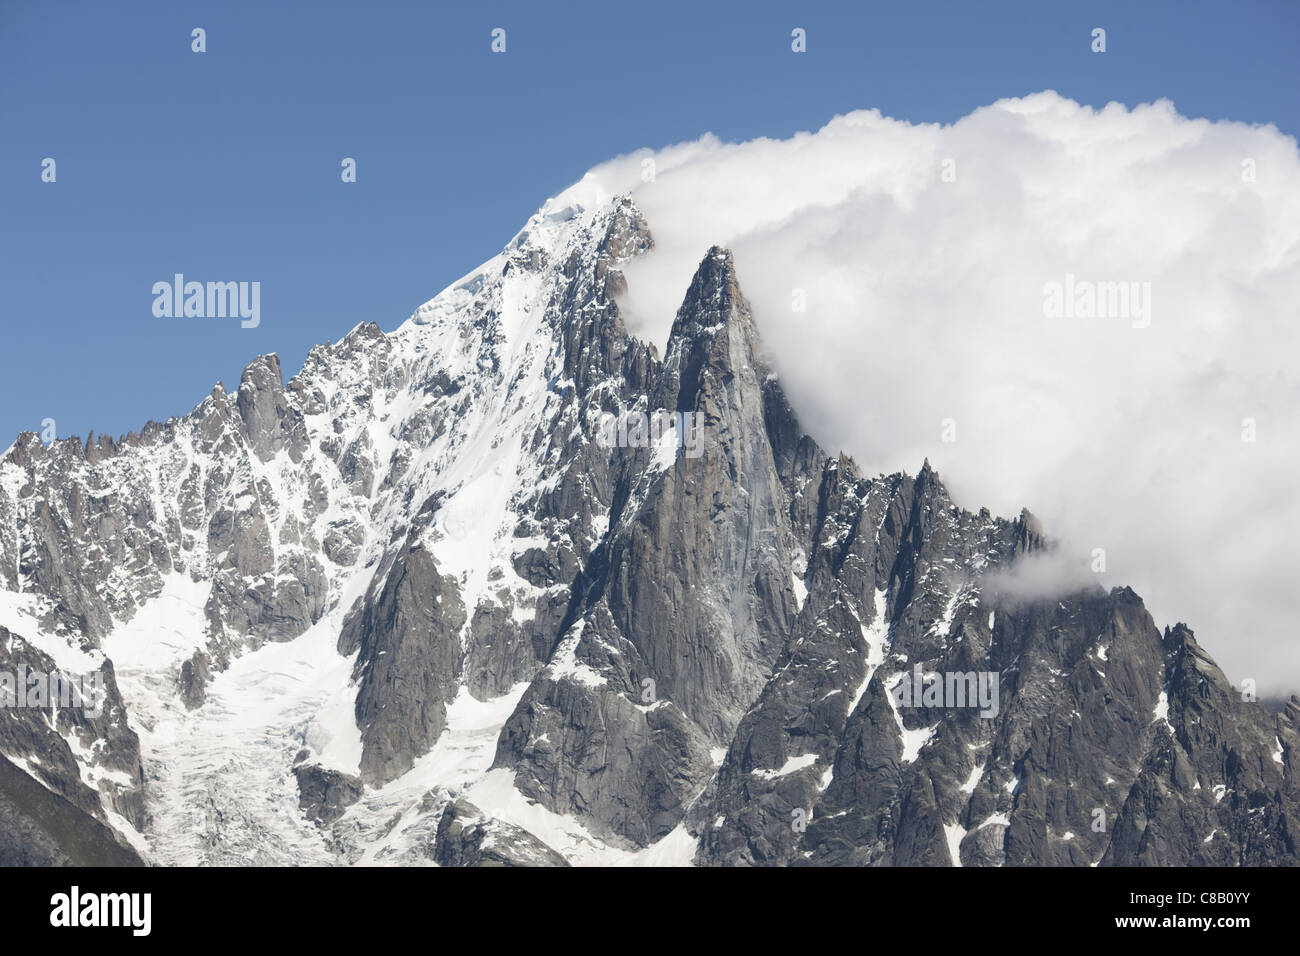 Ein Niederdruck nach unten löst die Bannerwolke rechts von Aiguille Verte (4122m) und Les Drus (3754m) aus. Chamonix, Haute-Savoie, Frankreich. Stockfoto